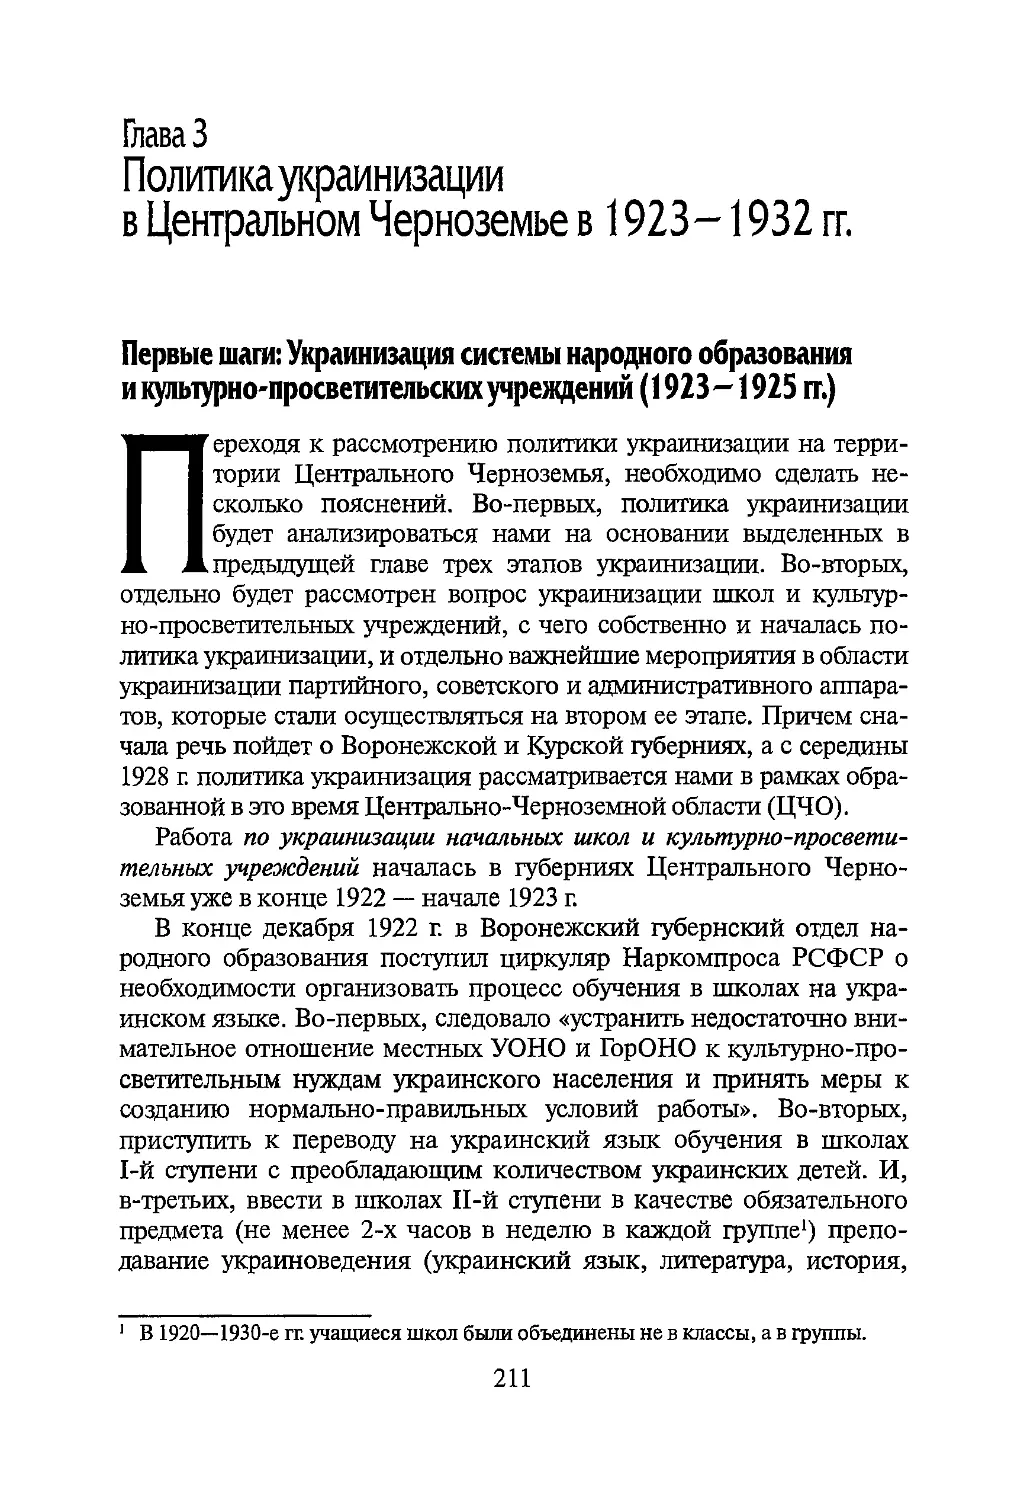 Глава 3. Политика украинизации в Центральном Черноземье в 1923-1932 гг